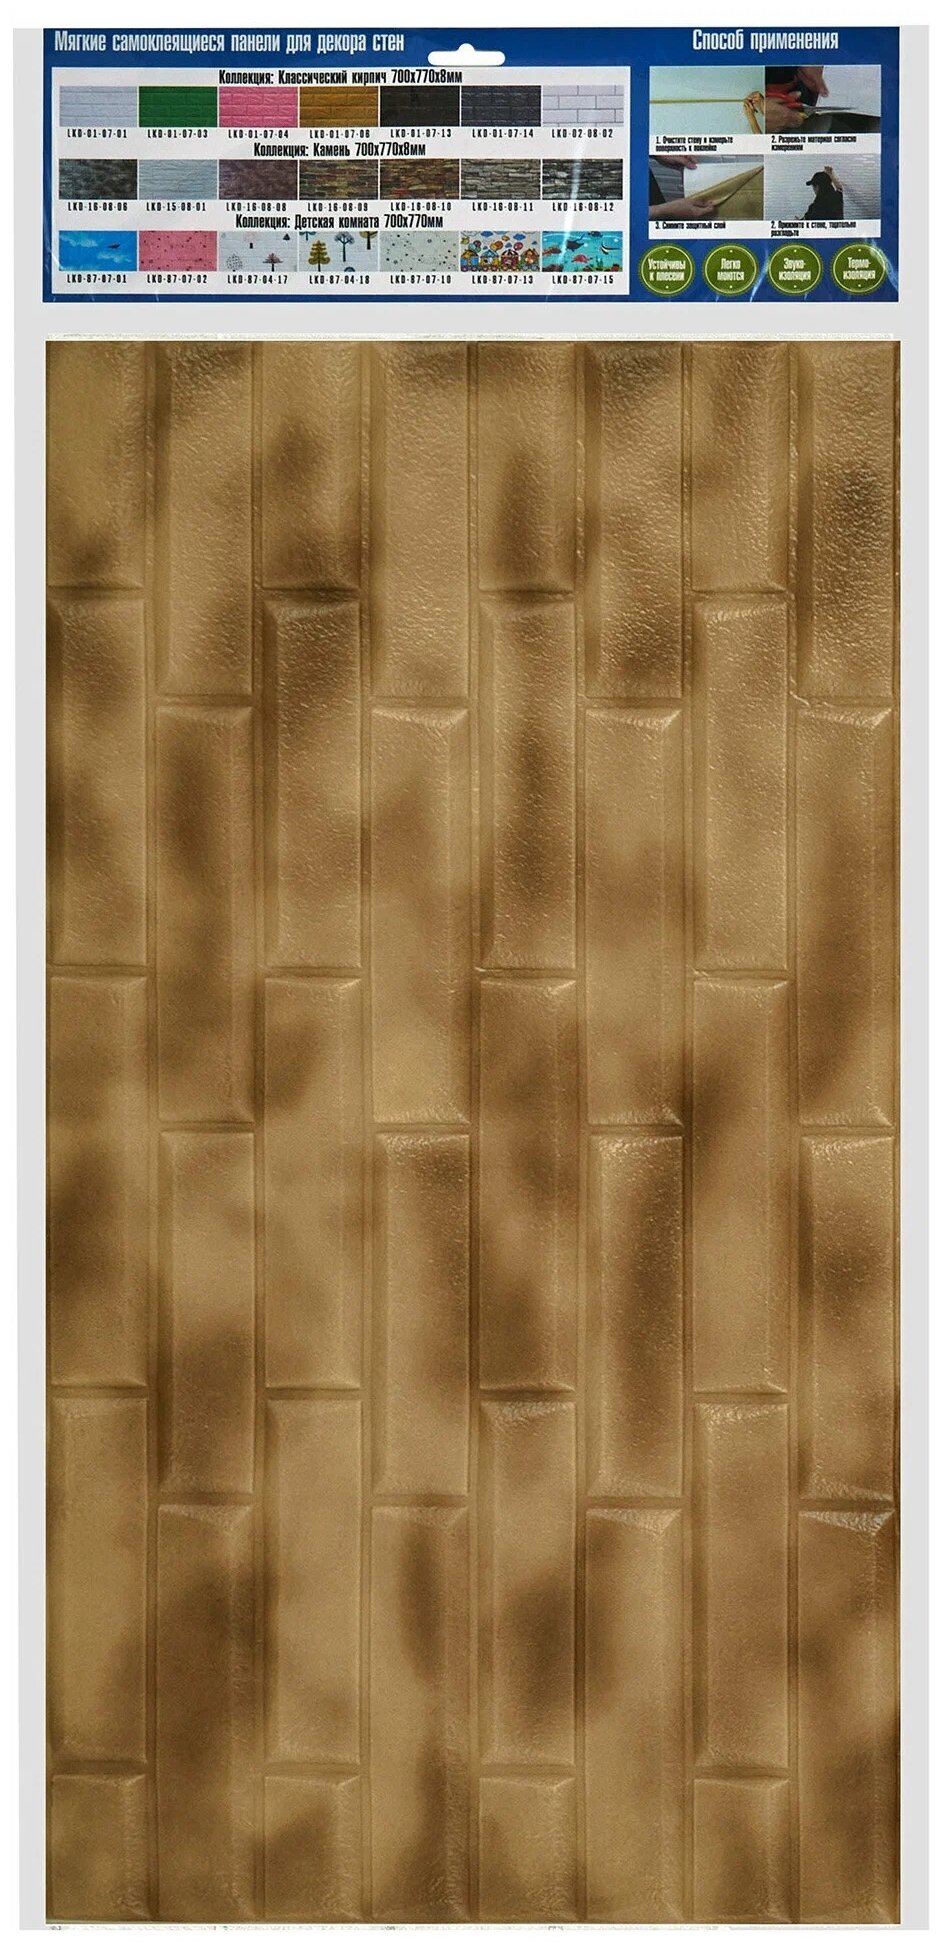 Мягкие самоклеящиеся панели для стен/обои самоклеящиеся/стеновая 3D панель/Скошенный кирпич, цвет Кофейно-белый мрамор, 70x77см, толщина 6мм - фотография № 4